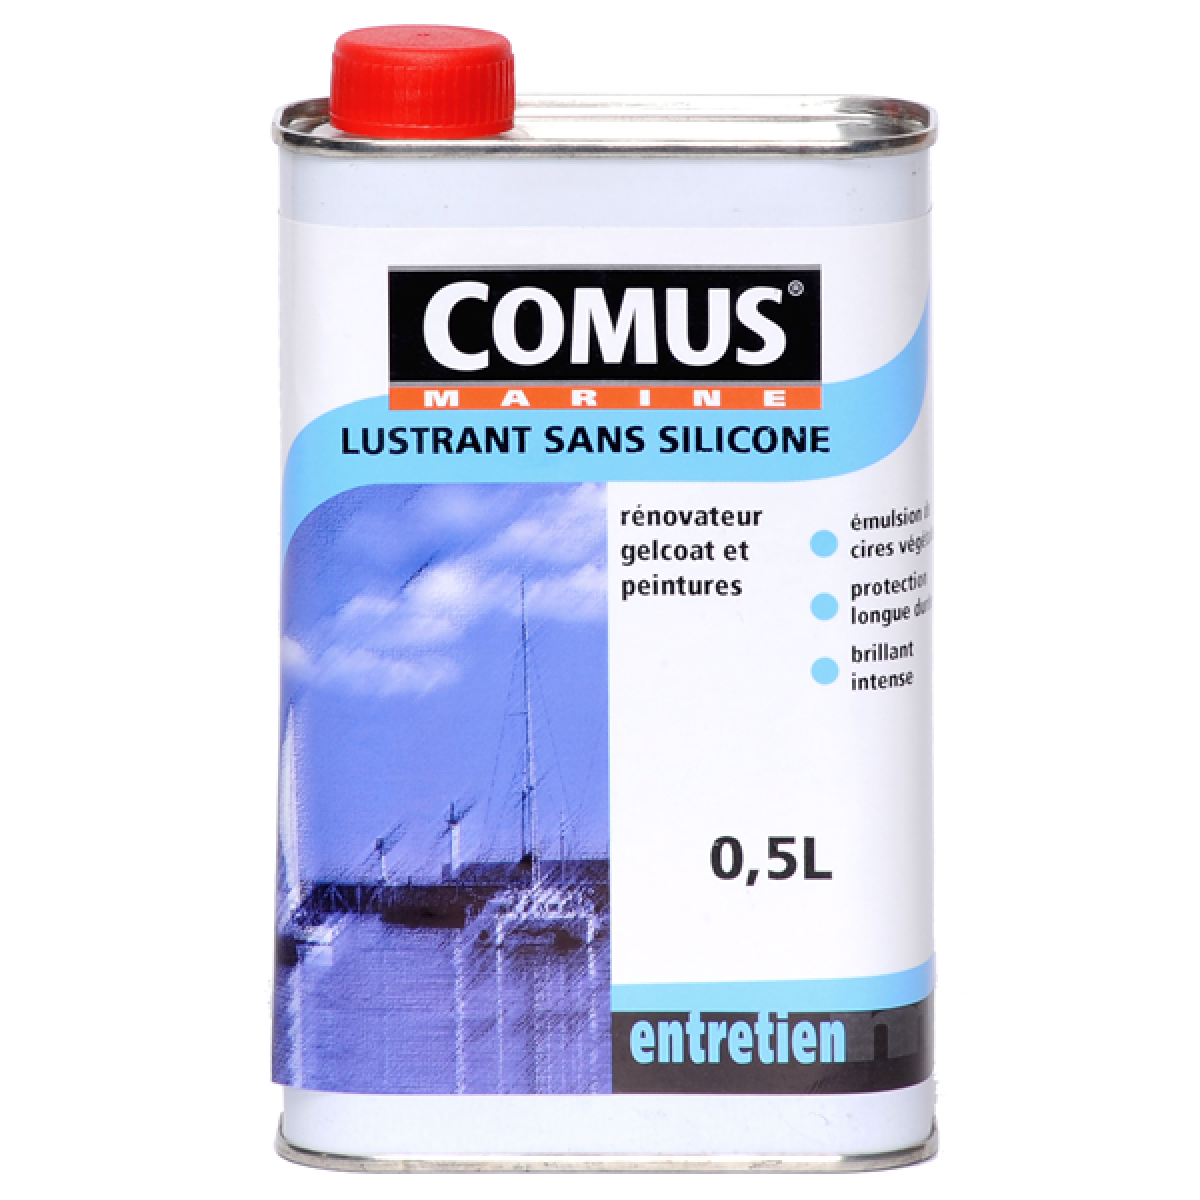 Comus - LUSTRANT SANS SILICONE 0,5L - Rénovateur pour gelcoats et peintures, à base de cires végétales - COMUS MARINE - Peinture extérieure